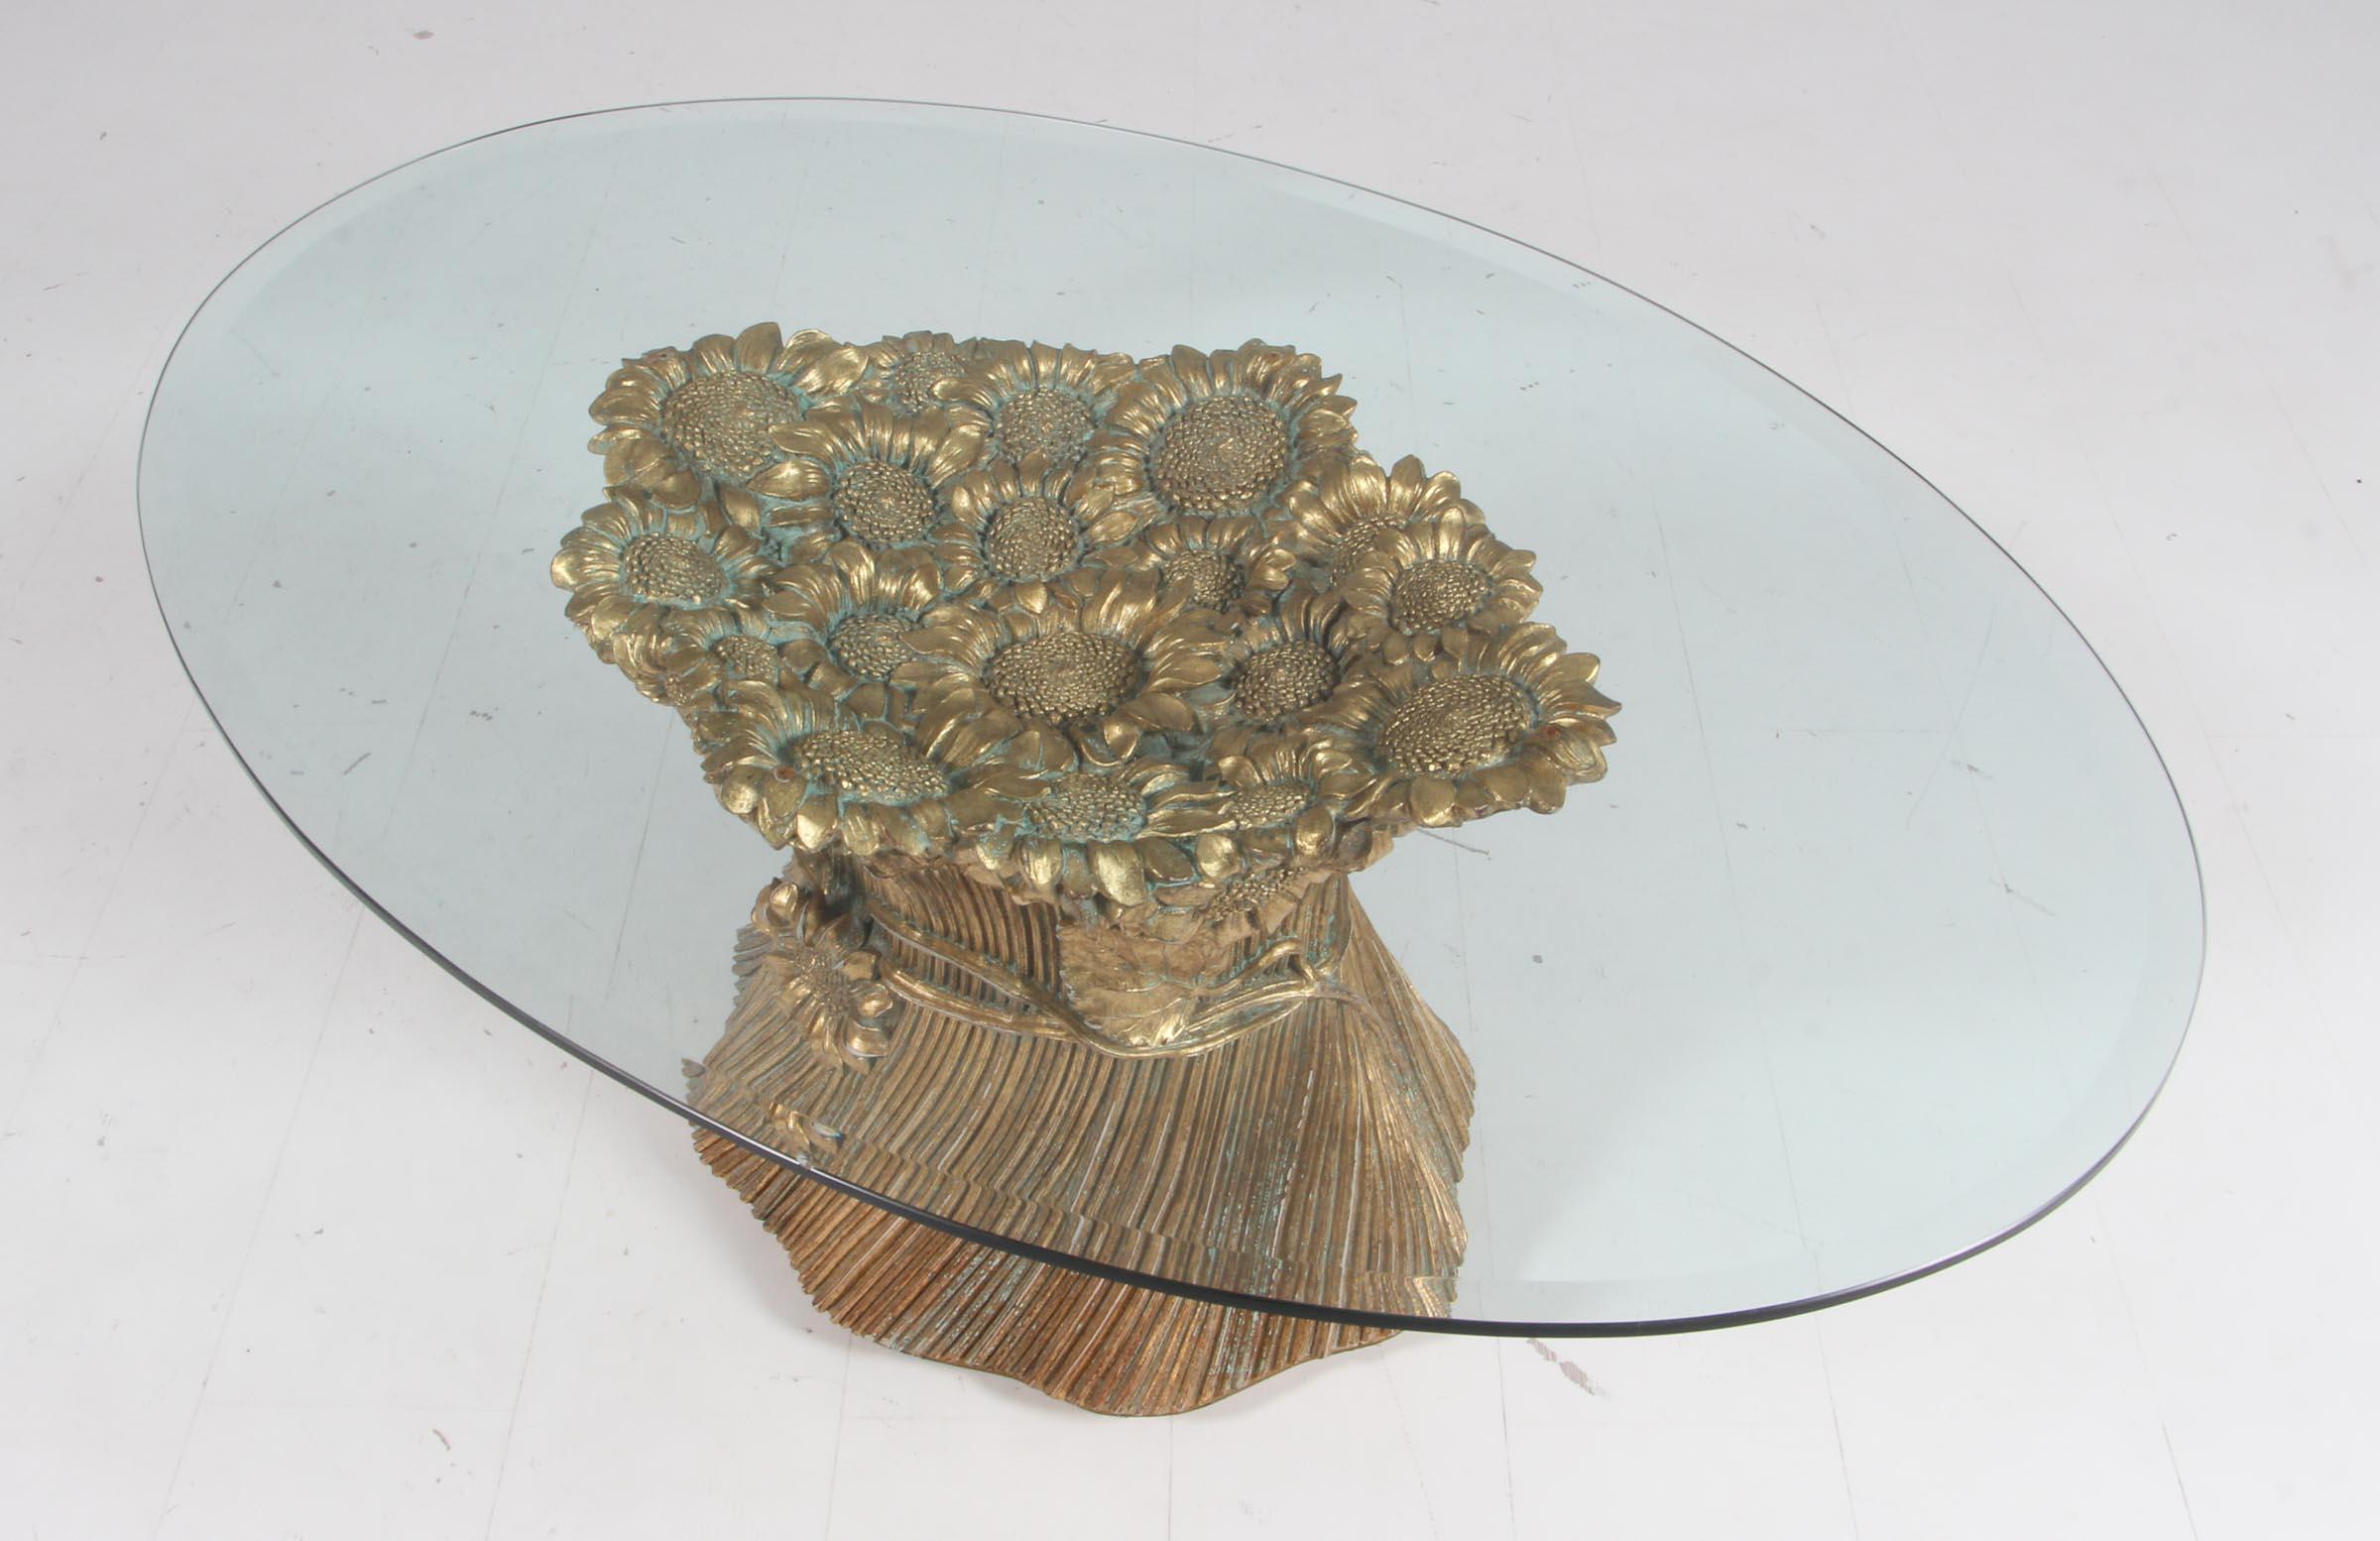 Table basse Morex en bois doré avec décorations florales.

Dessus en verre.

Fabriqué par Morex dans les années 1950